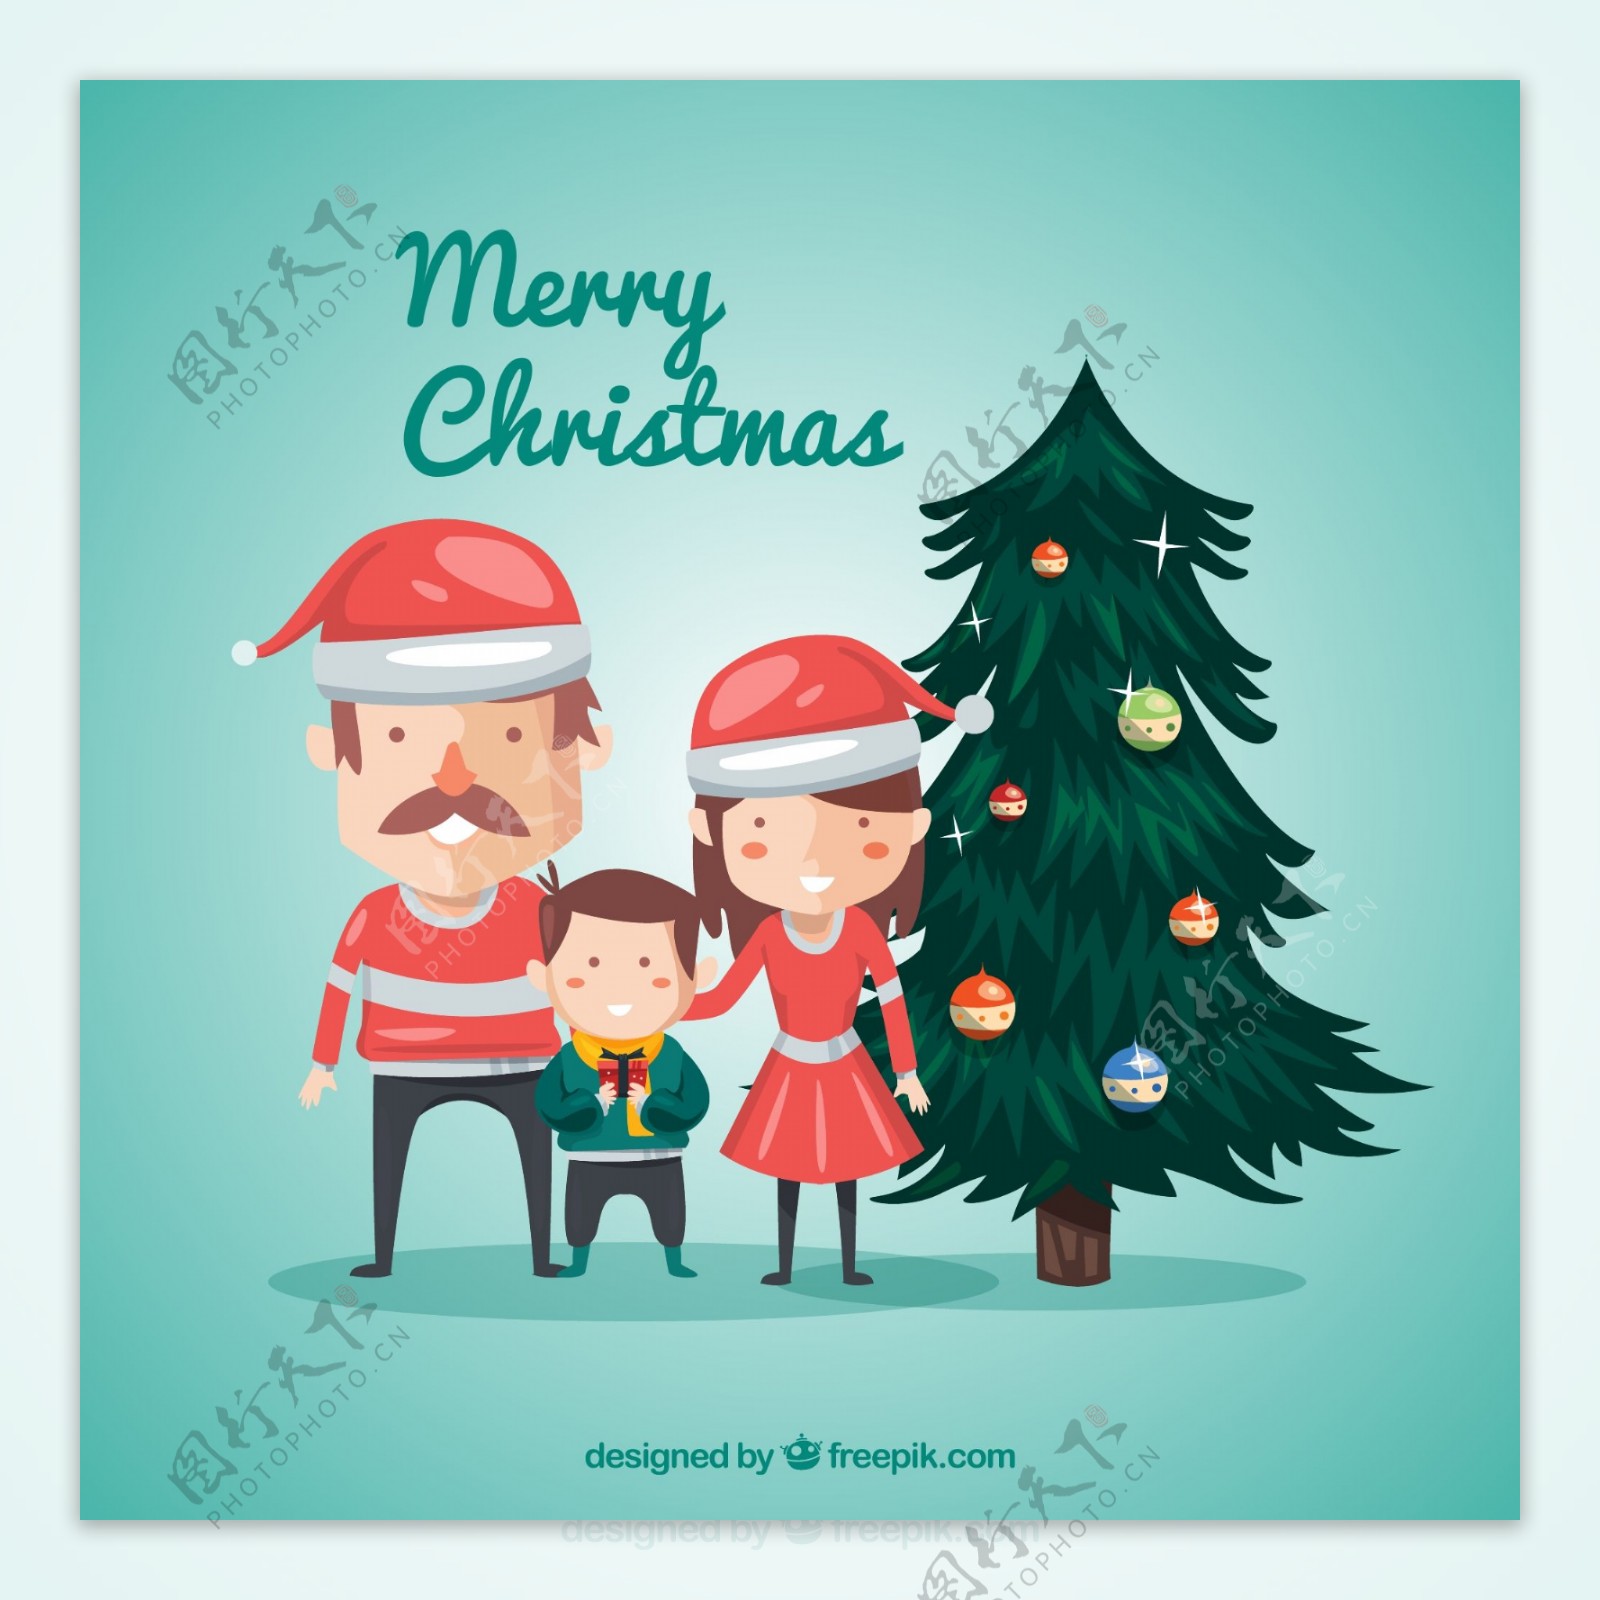 圣诞树和圣诞家庭